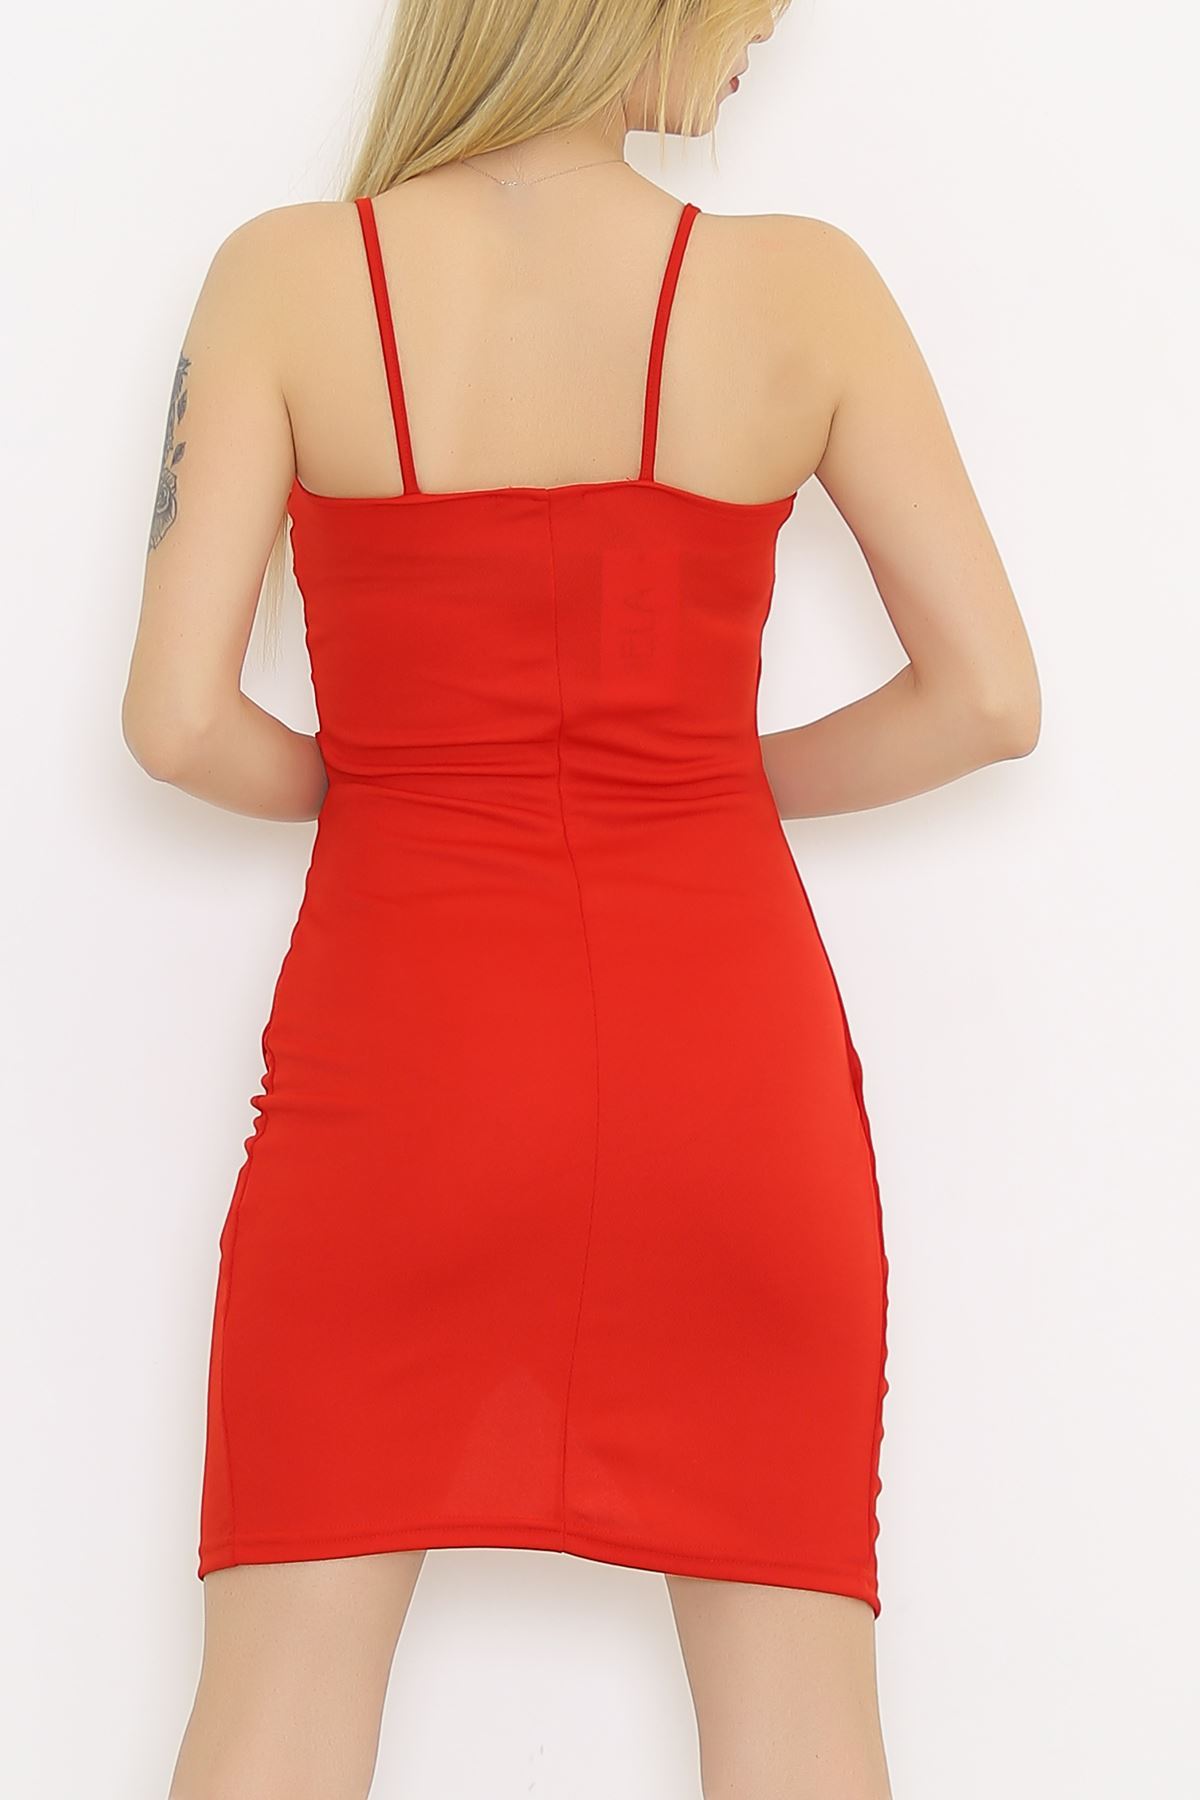 Krep Elbise Kırmızı - 581814.1592.